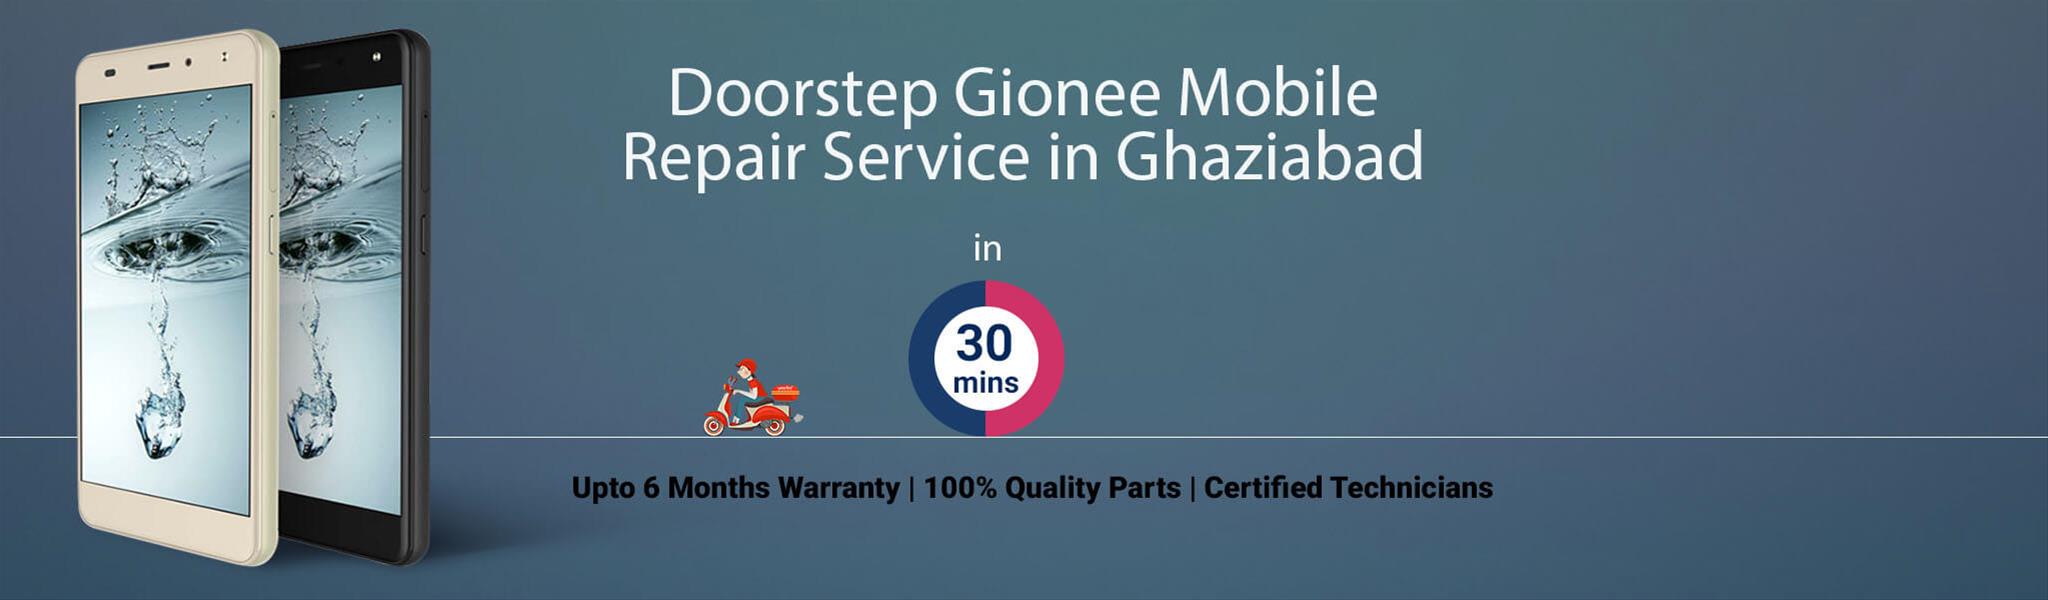 gionee-repair-service-banner-ghaziabad.jpg